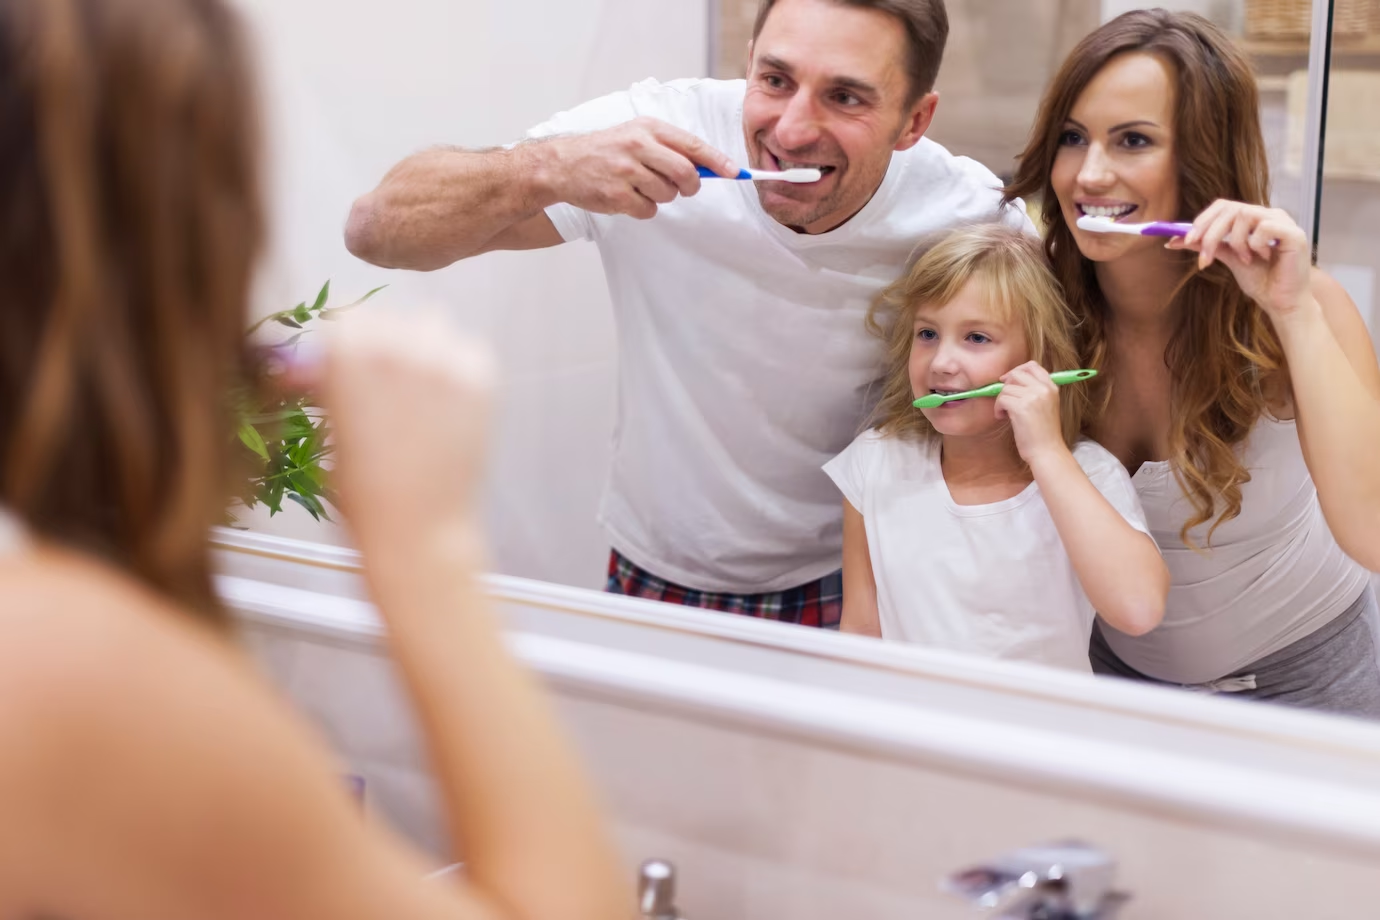 เพื่อสุขอนามัยที่ดีควรเลือกใช้แปรงสีฟันที่ได้มาตรฐาน